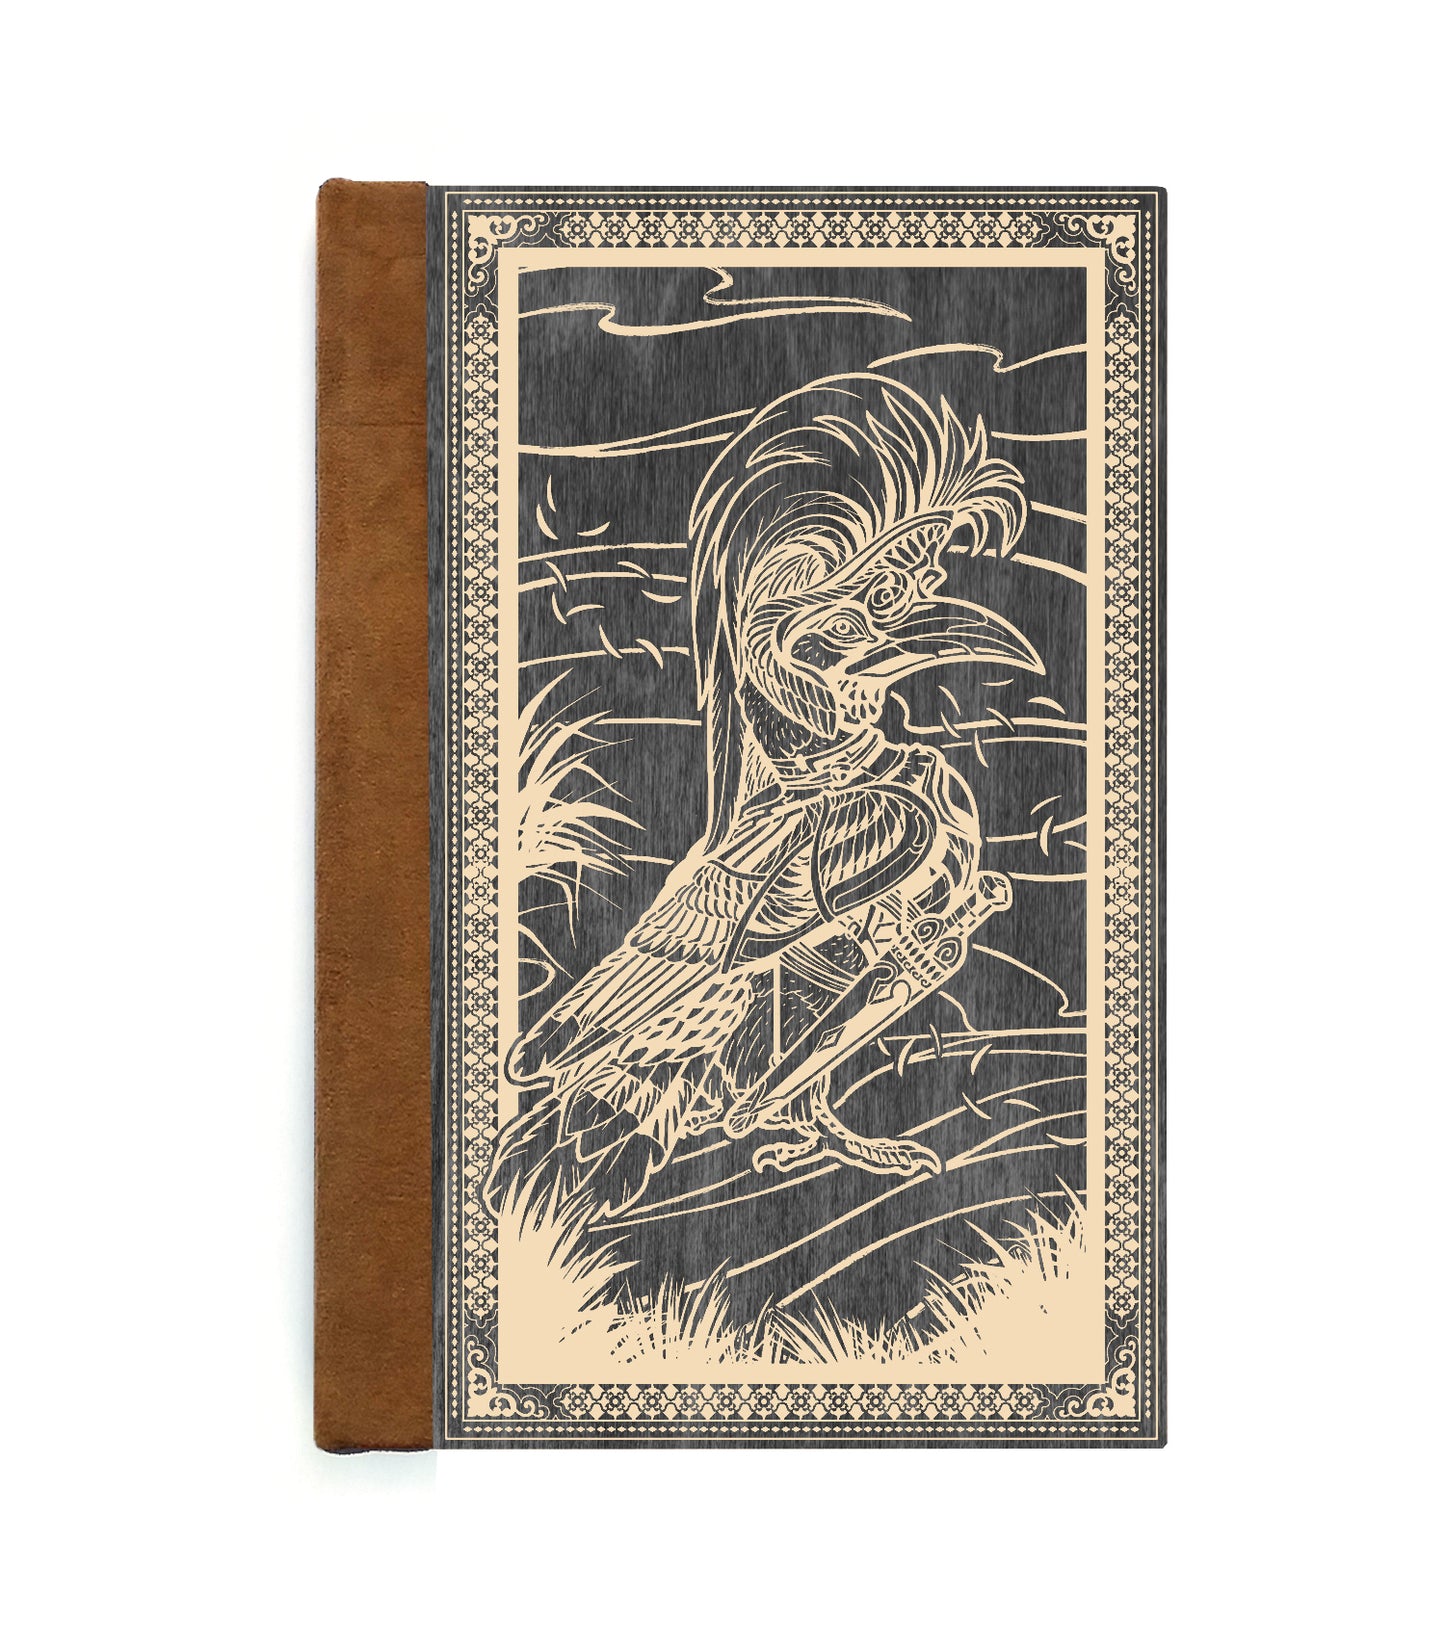 Hornbill General Magnetic Wooden Journal, Black & Cream